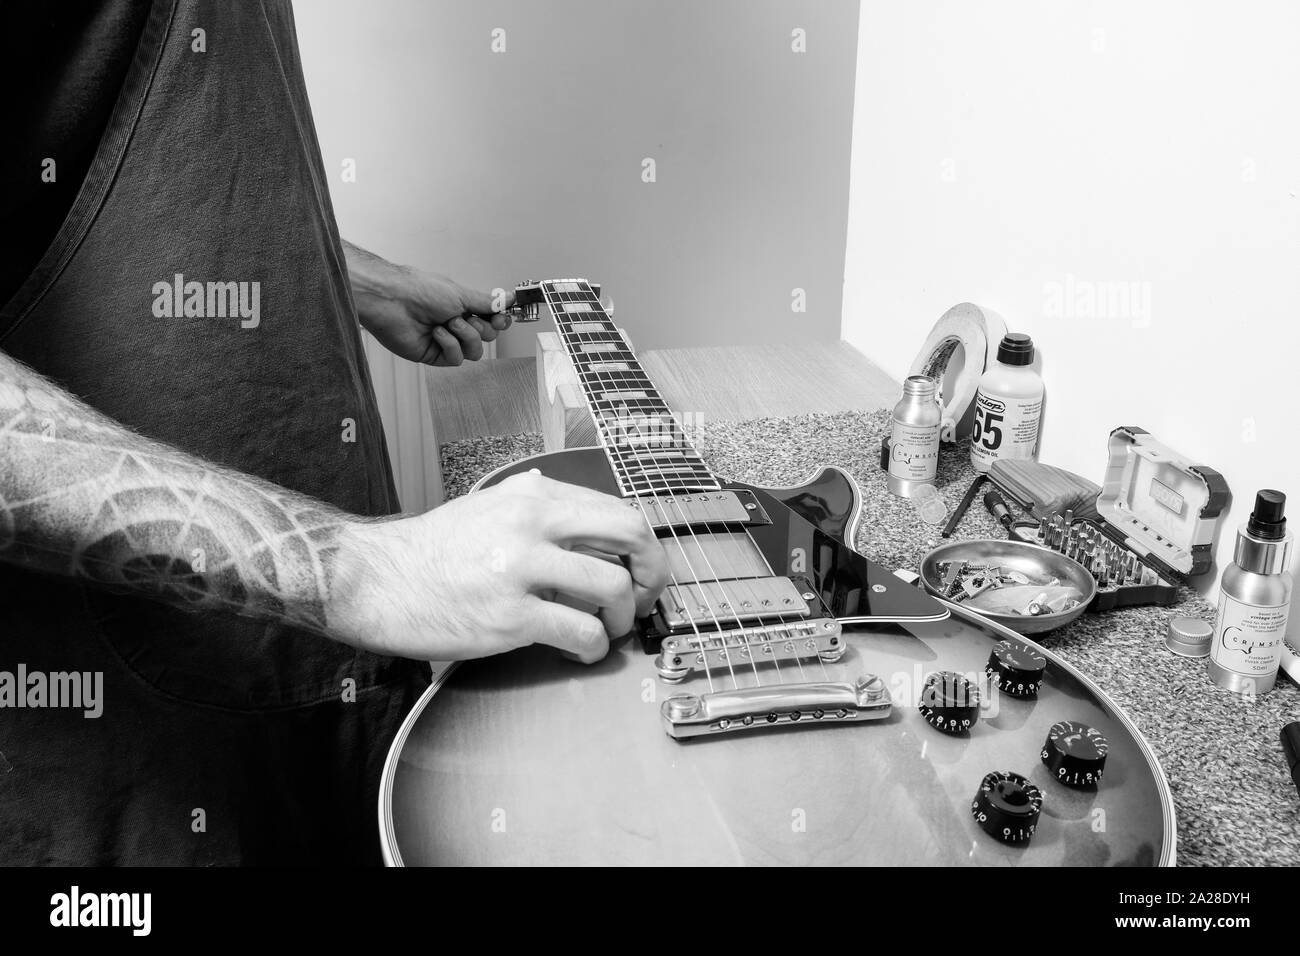 Un tecnico di chitarra o tech tuning una infilate nuovamente Gibson chitarra elettrica nella sua bottega. Lui è la sintonizzazione del tuning post mentre spiumatura la stringa Foto Stock